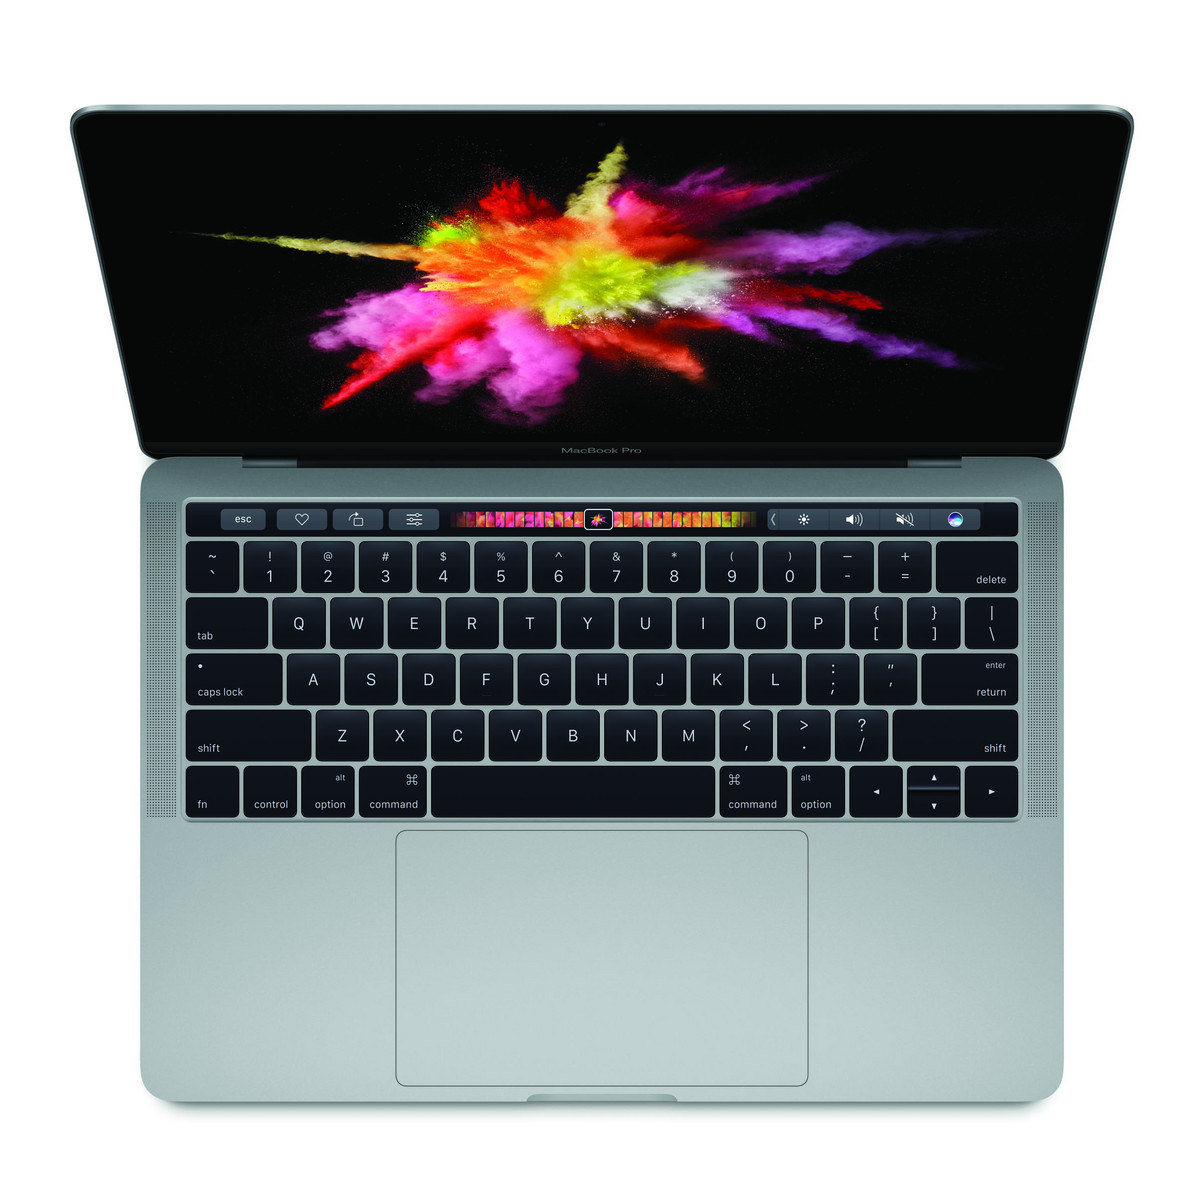 Apple MacBook Pro 13 2016 (2.9 GHz) - Notebookcheck.net External